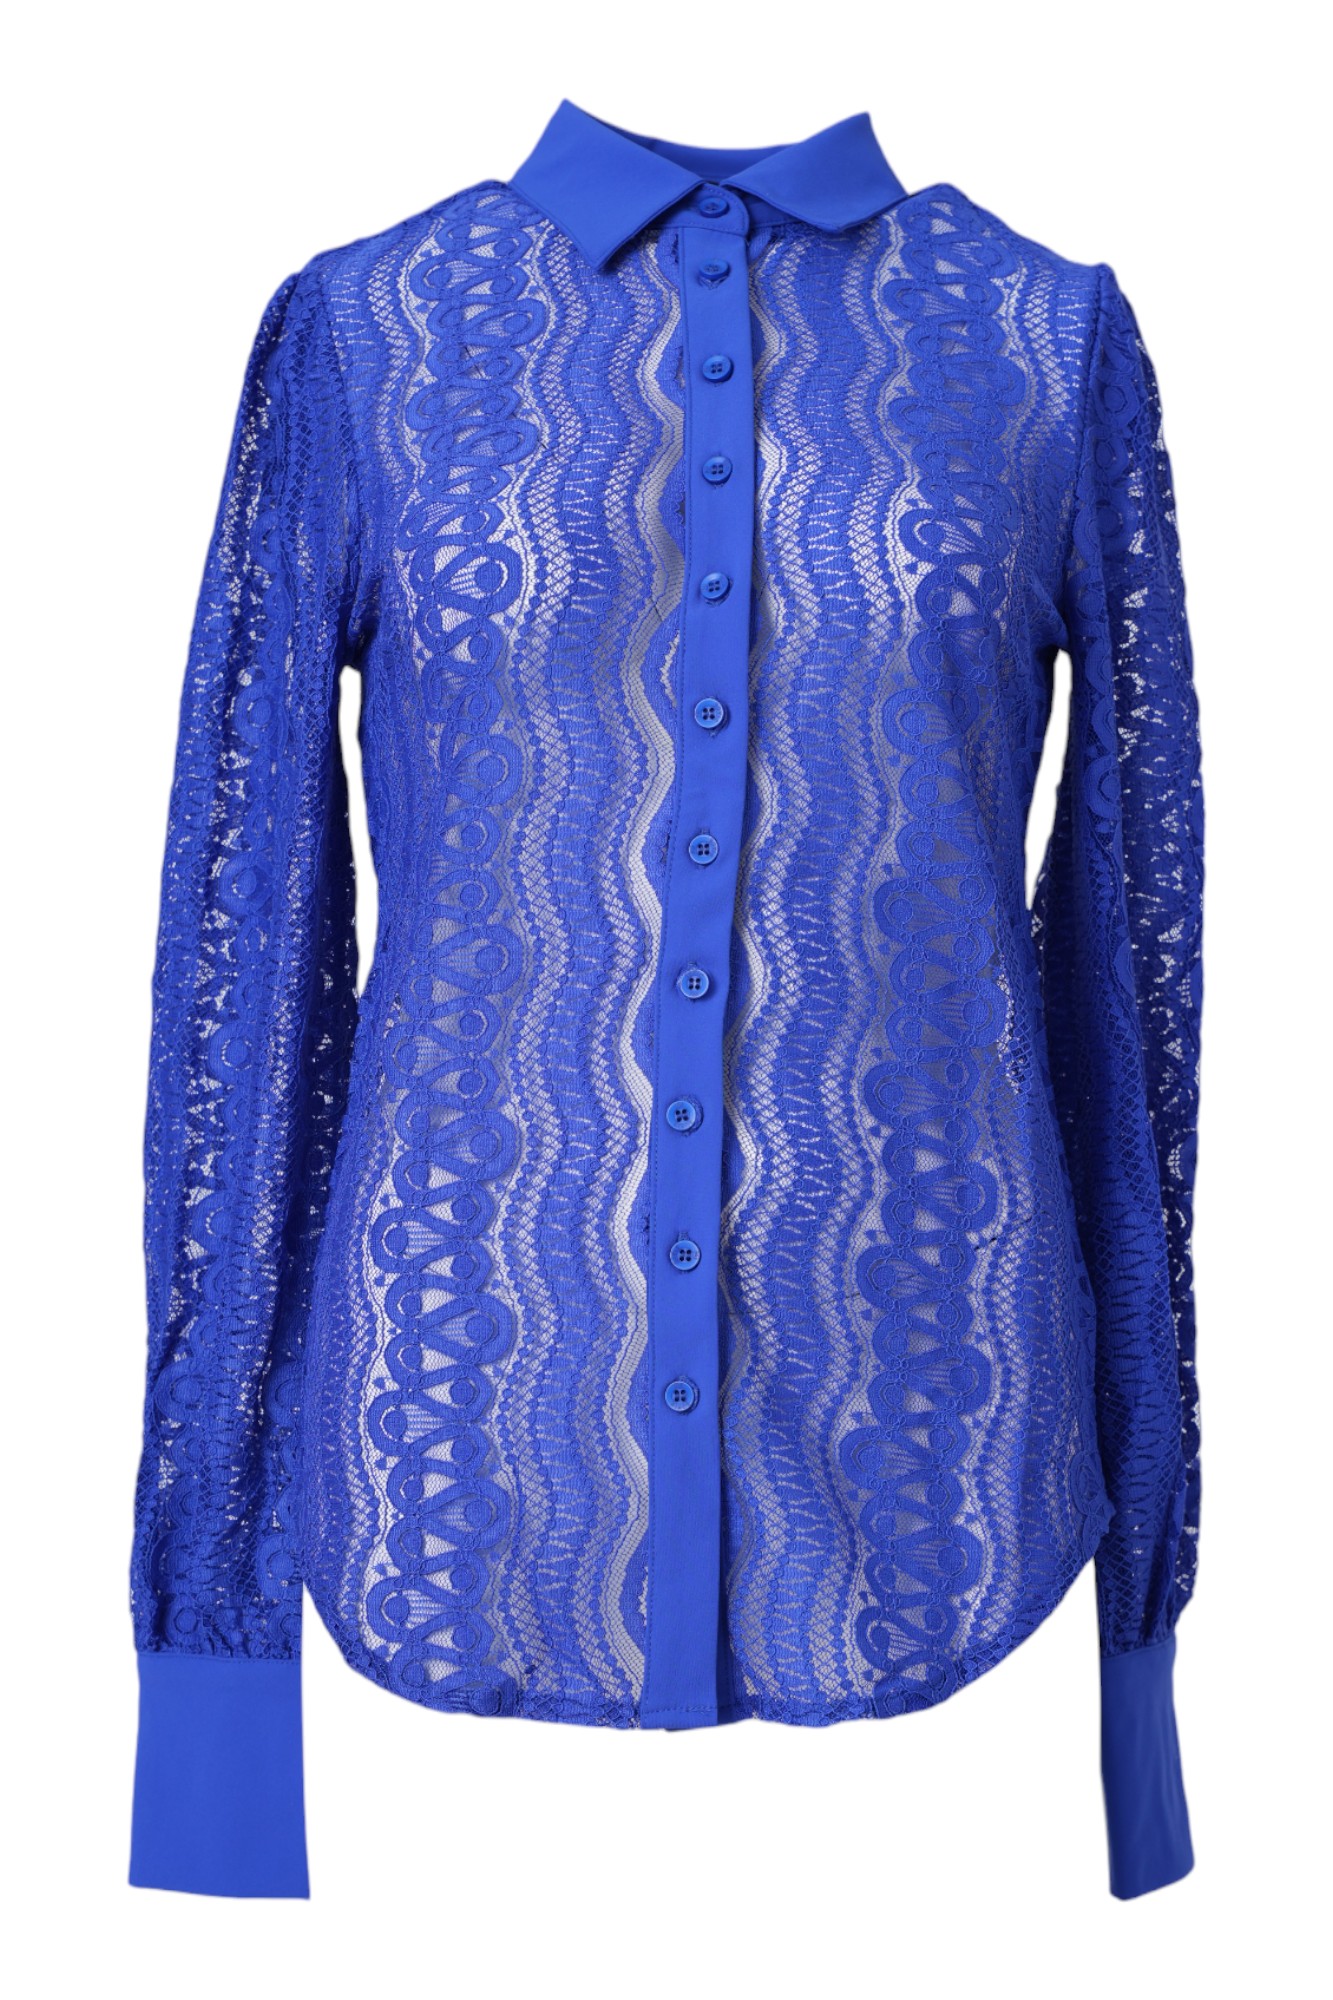 blouse-mi-piace-cobalt-blouse-202352